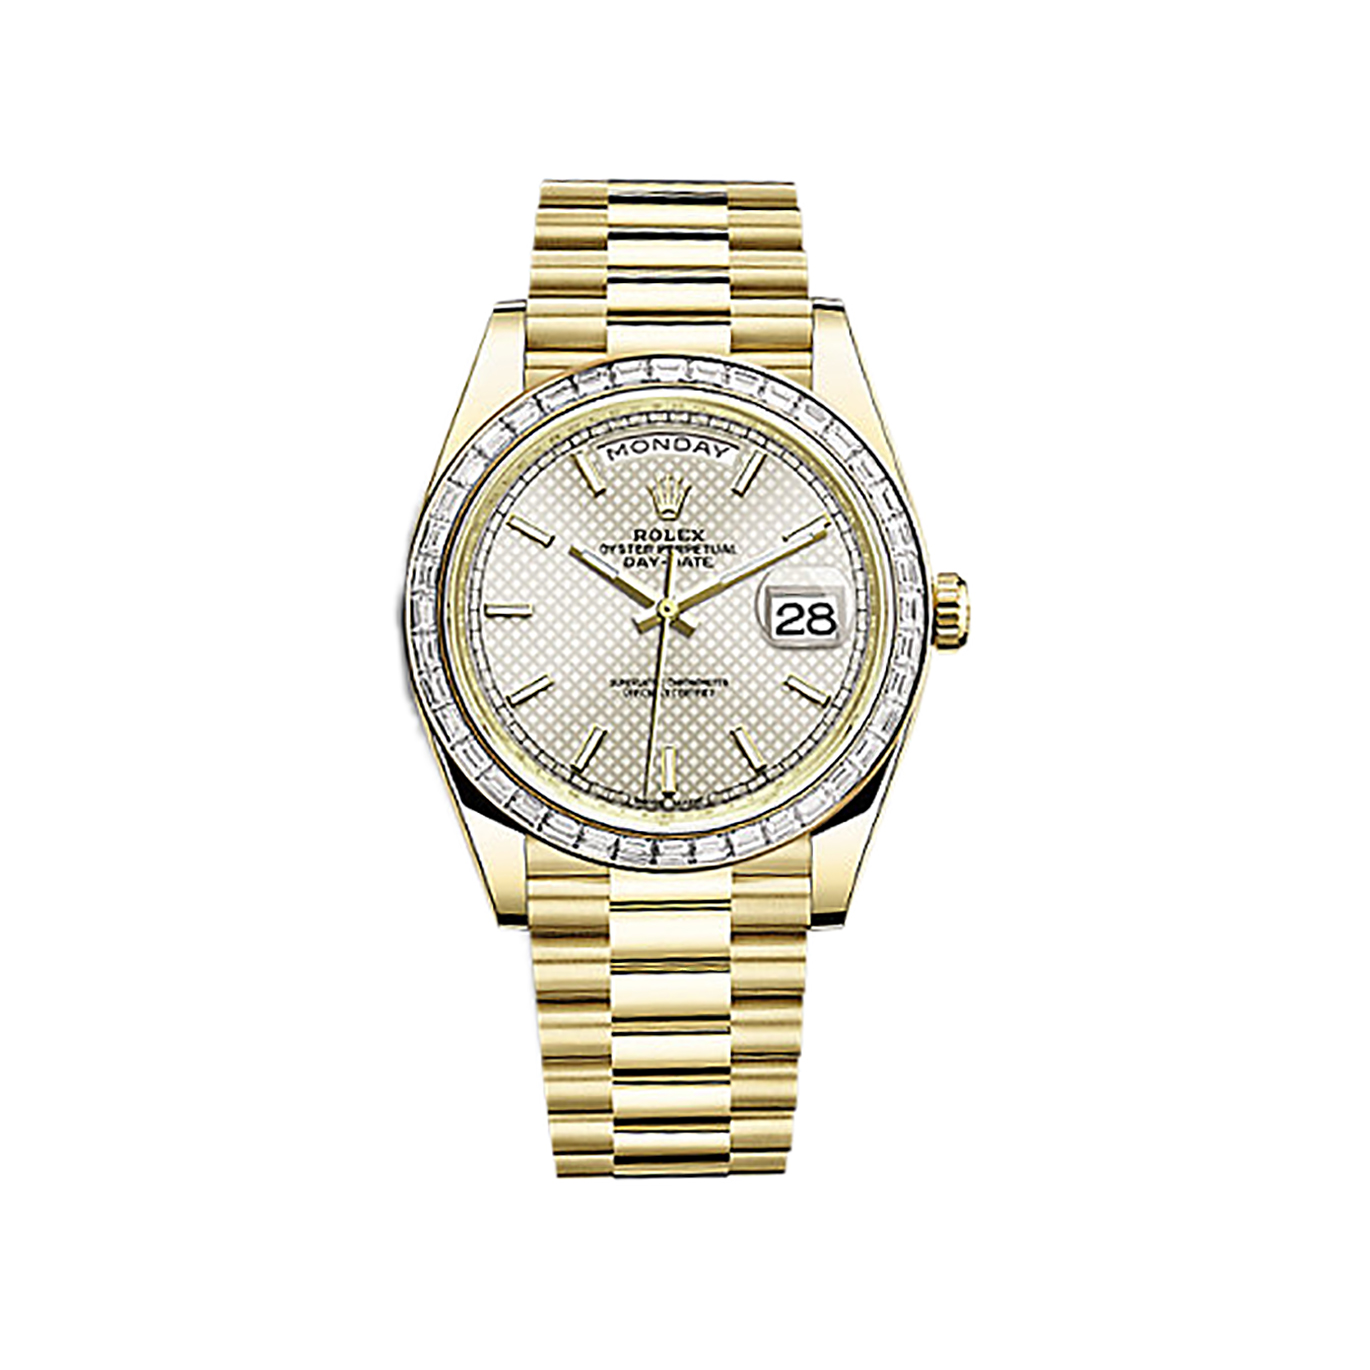 Day-Date 40 228398TBR Gold & Diamonds Watch (Silver, Diagonal Motif)